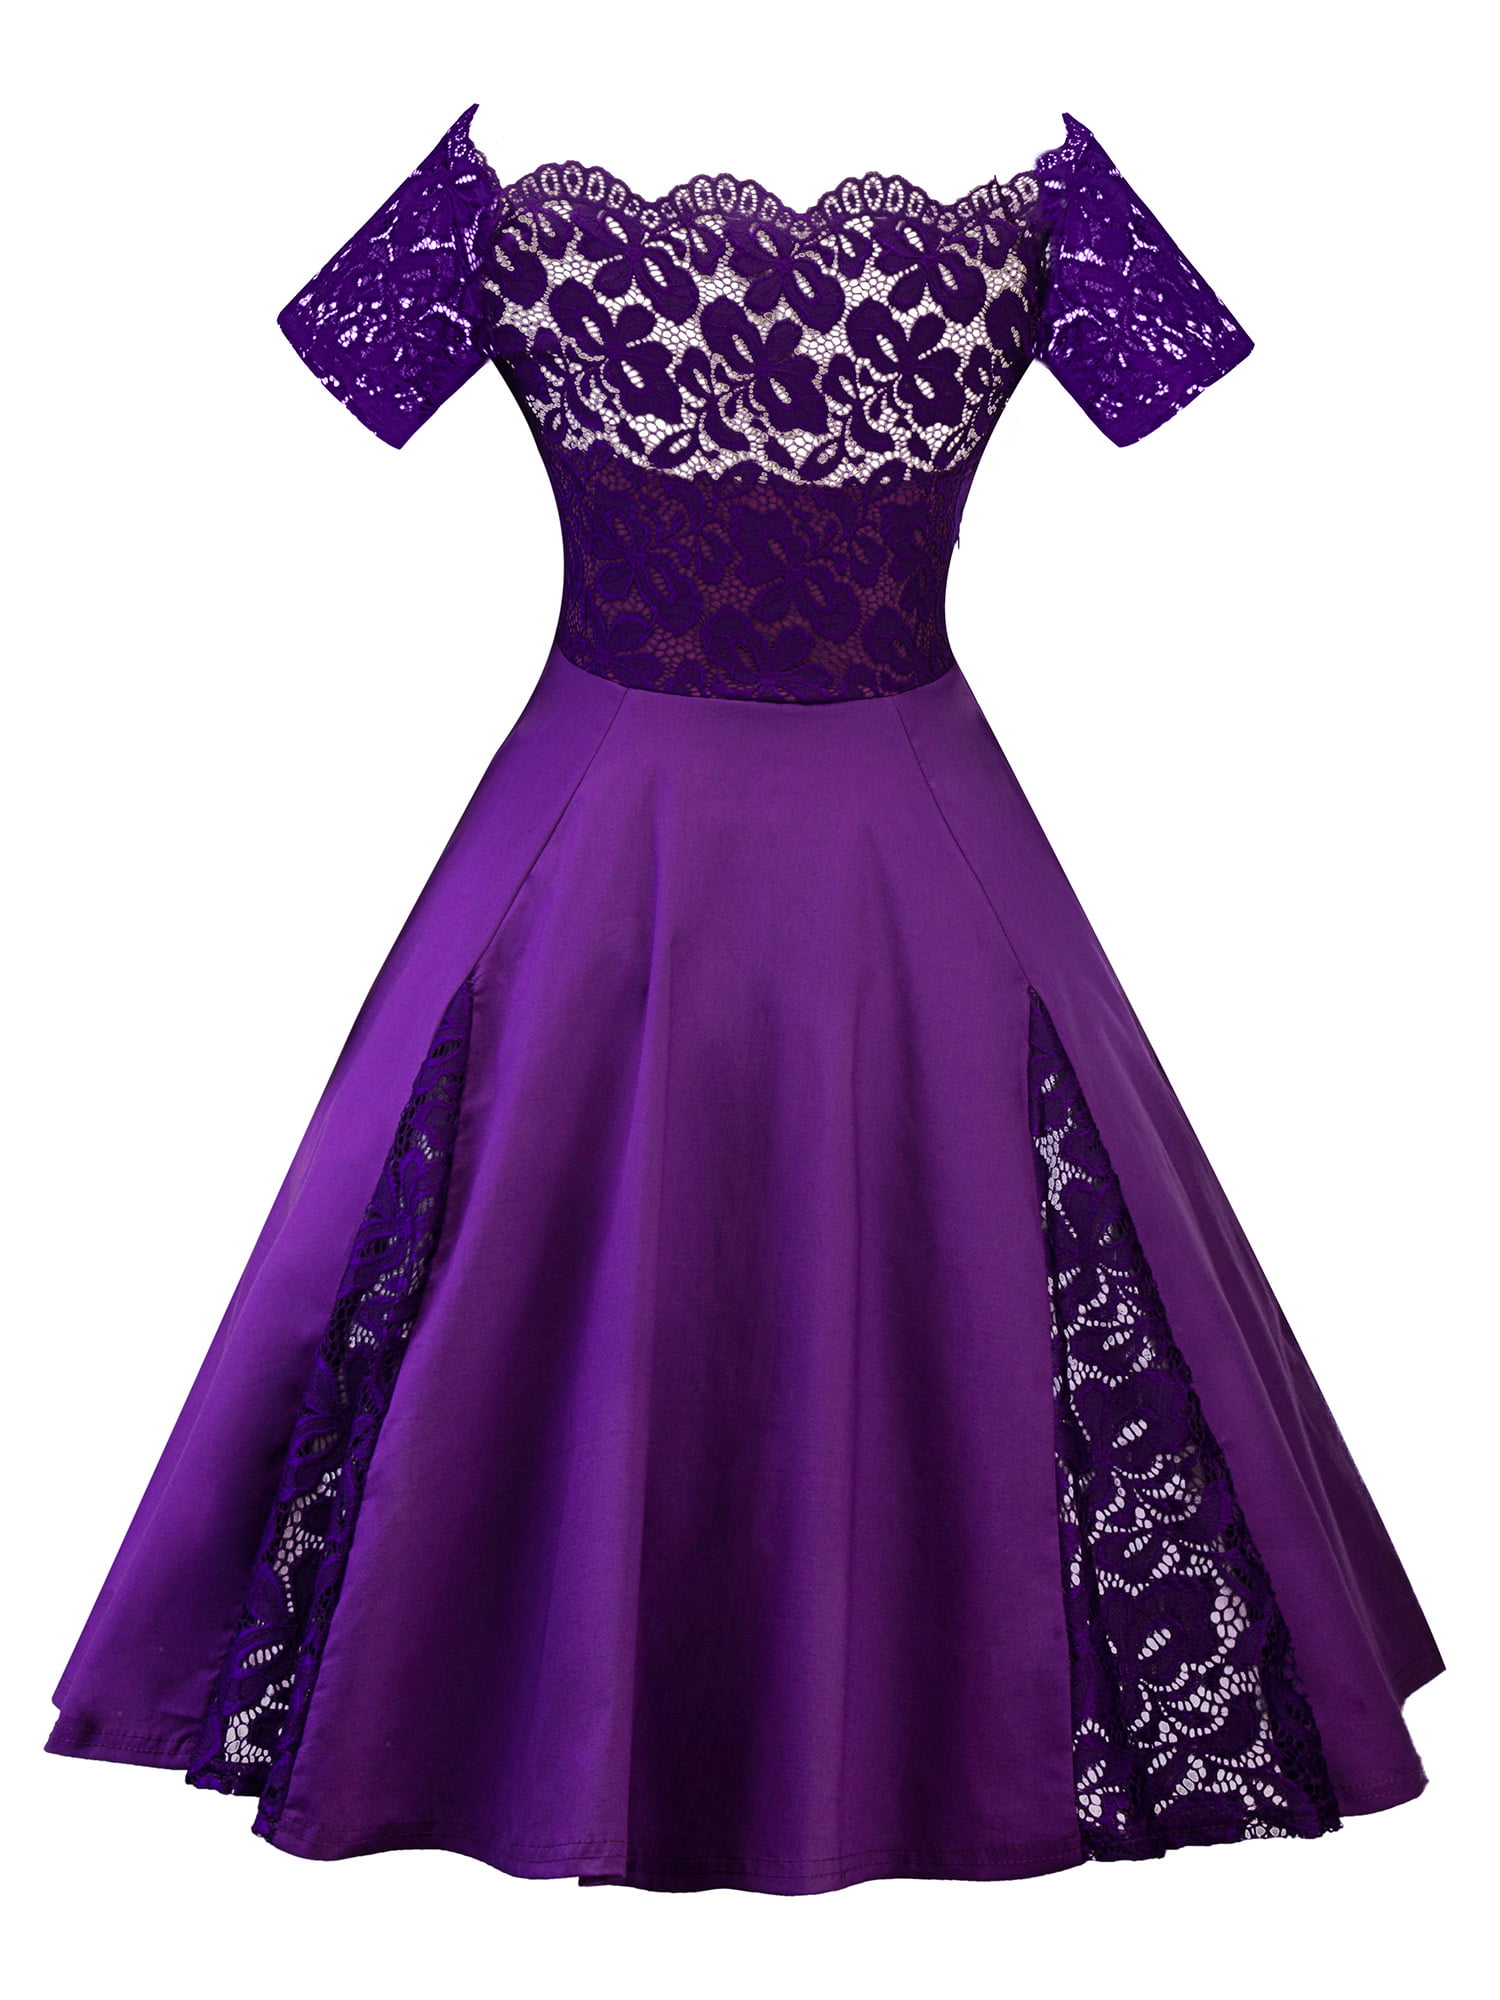 women's plus size purple dress